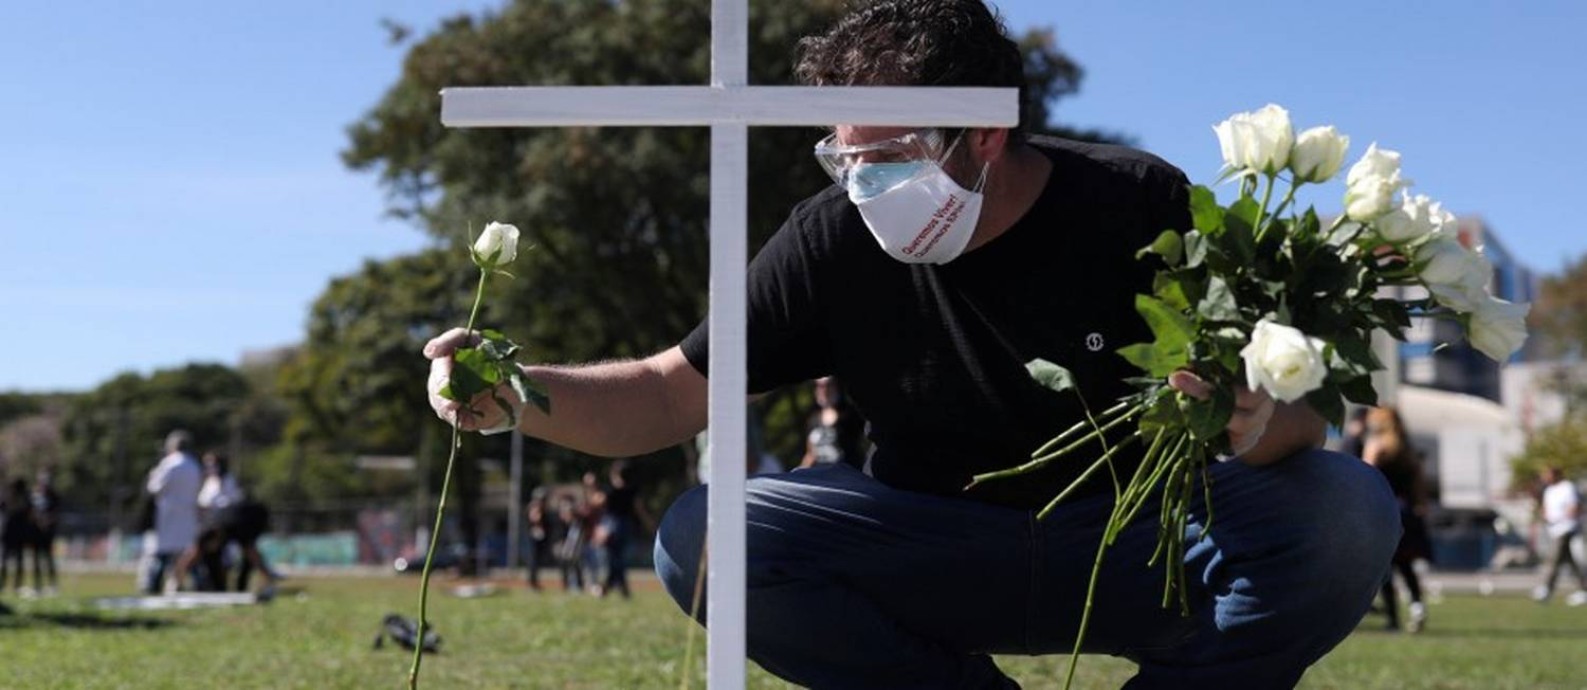 Homem coloca uma flor diante de uma cruz simbólica num protesto e homenagem a profissionais da saúde mortos pela Covid-19 em São Paulo Foto: AMANDA PEROBELLI / REUTERS